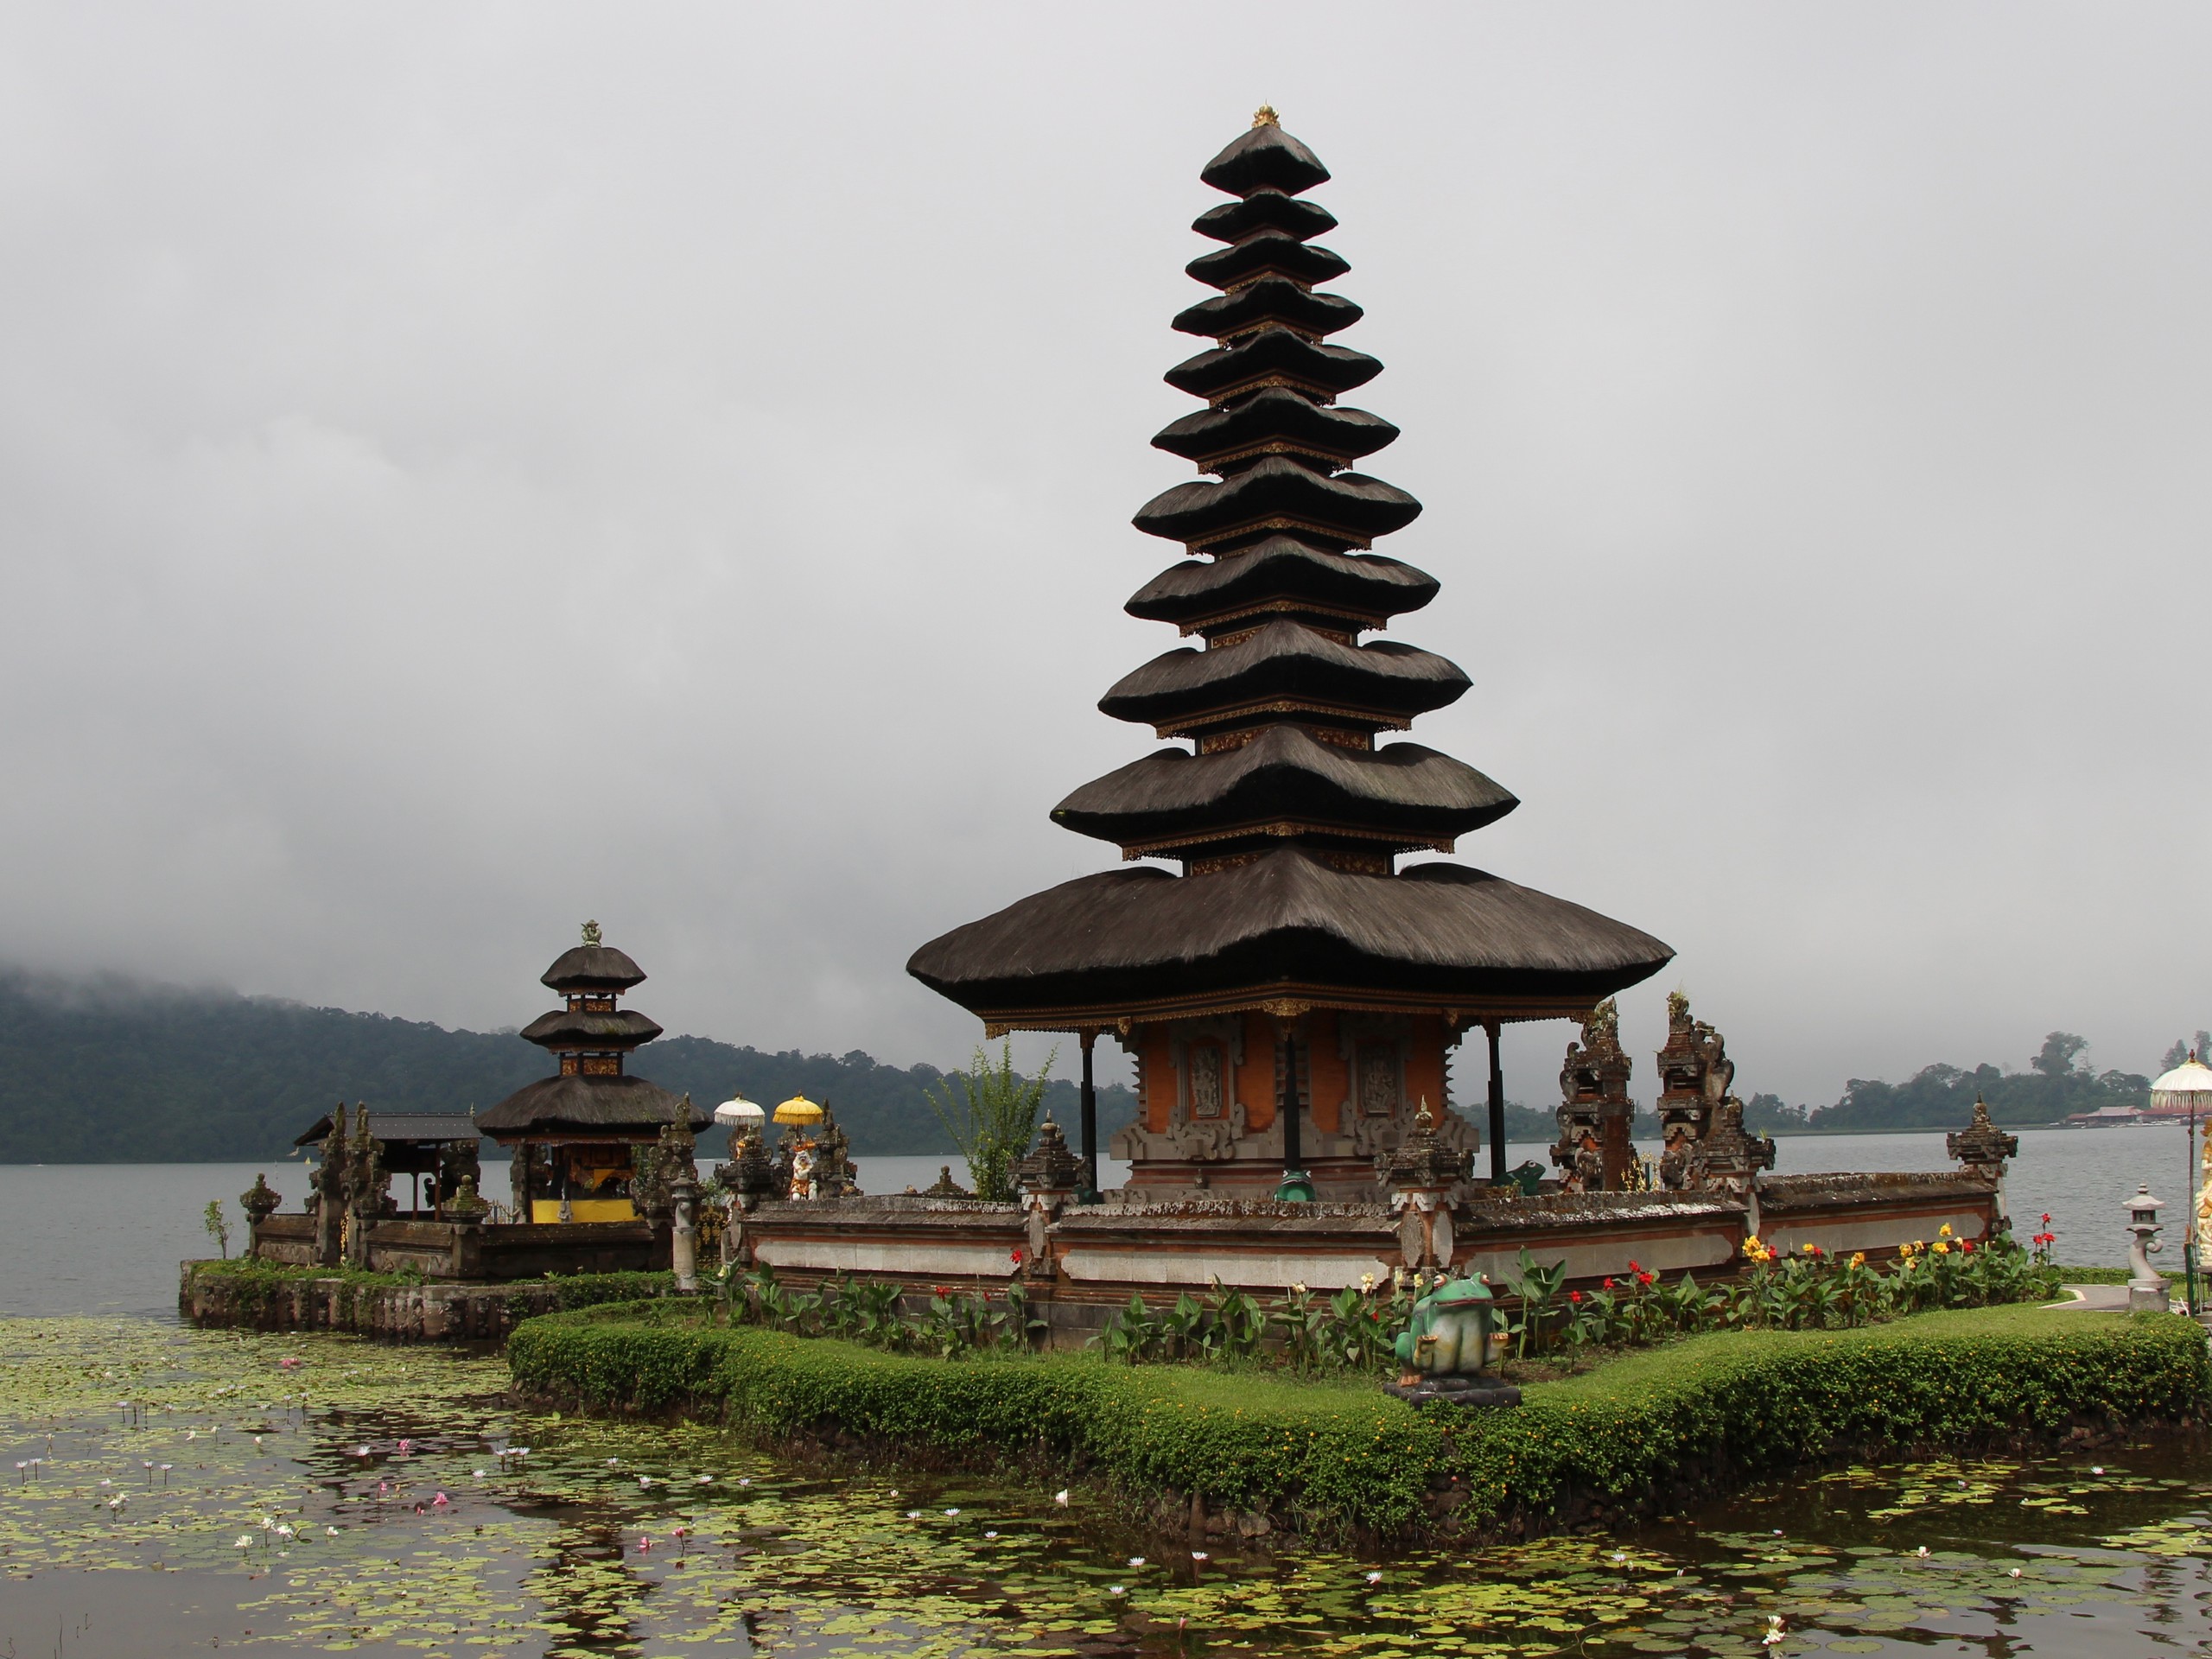 Bali - Kintamani - Ulundanu Temple